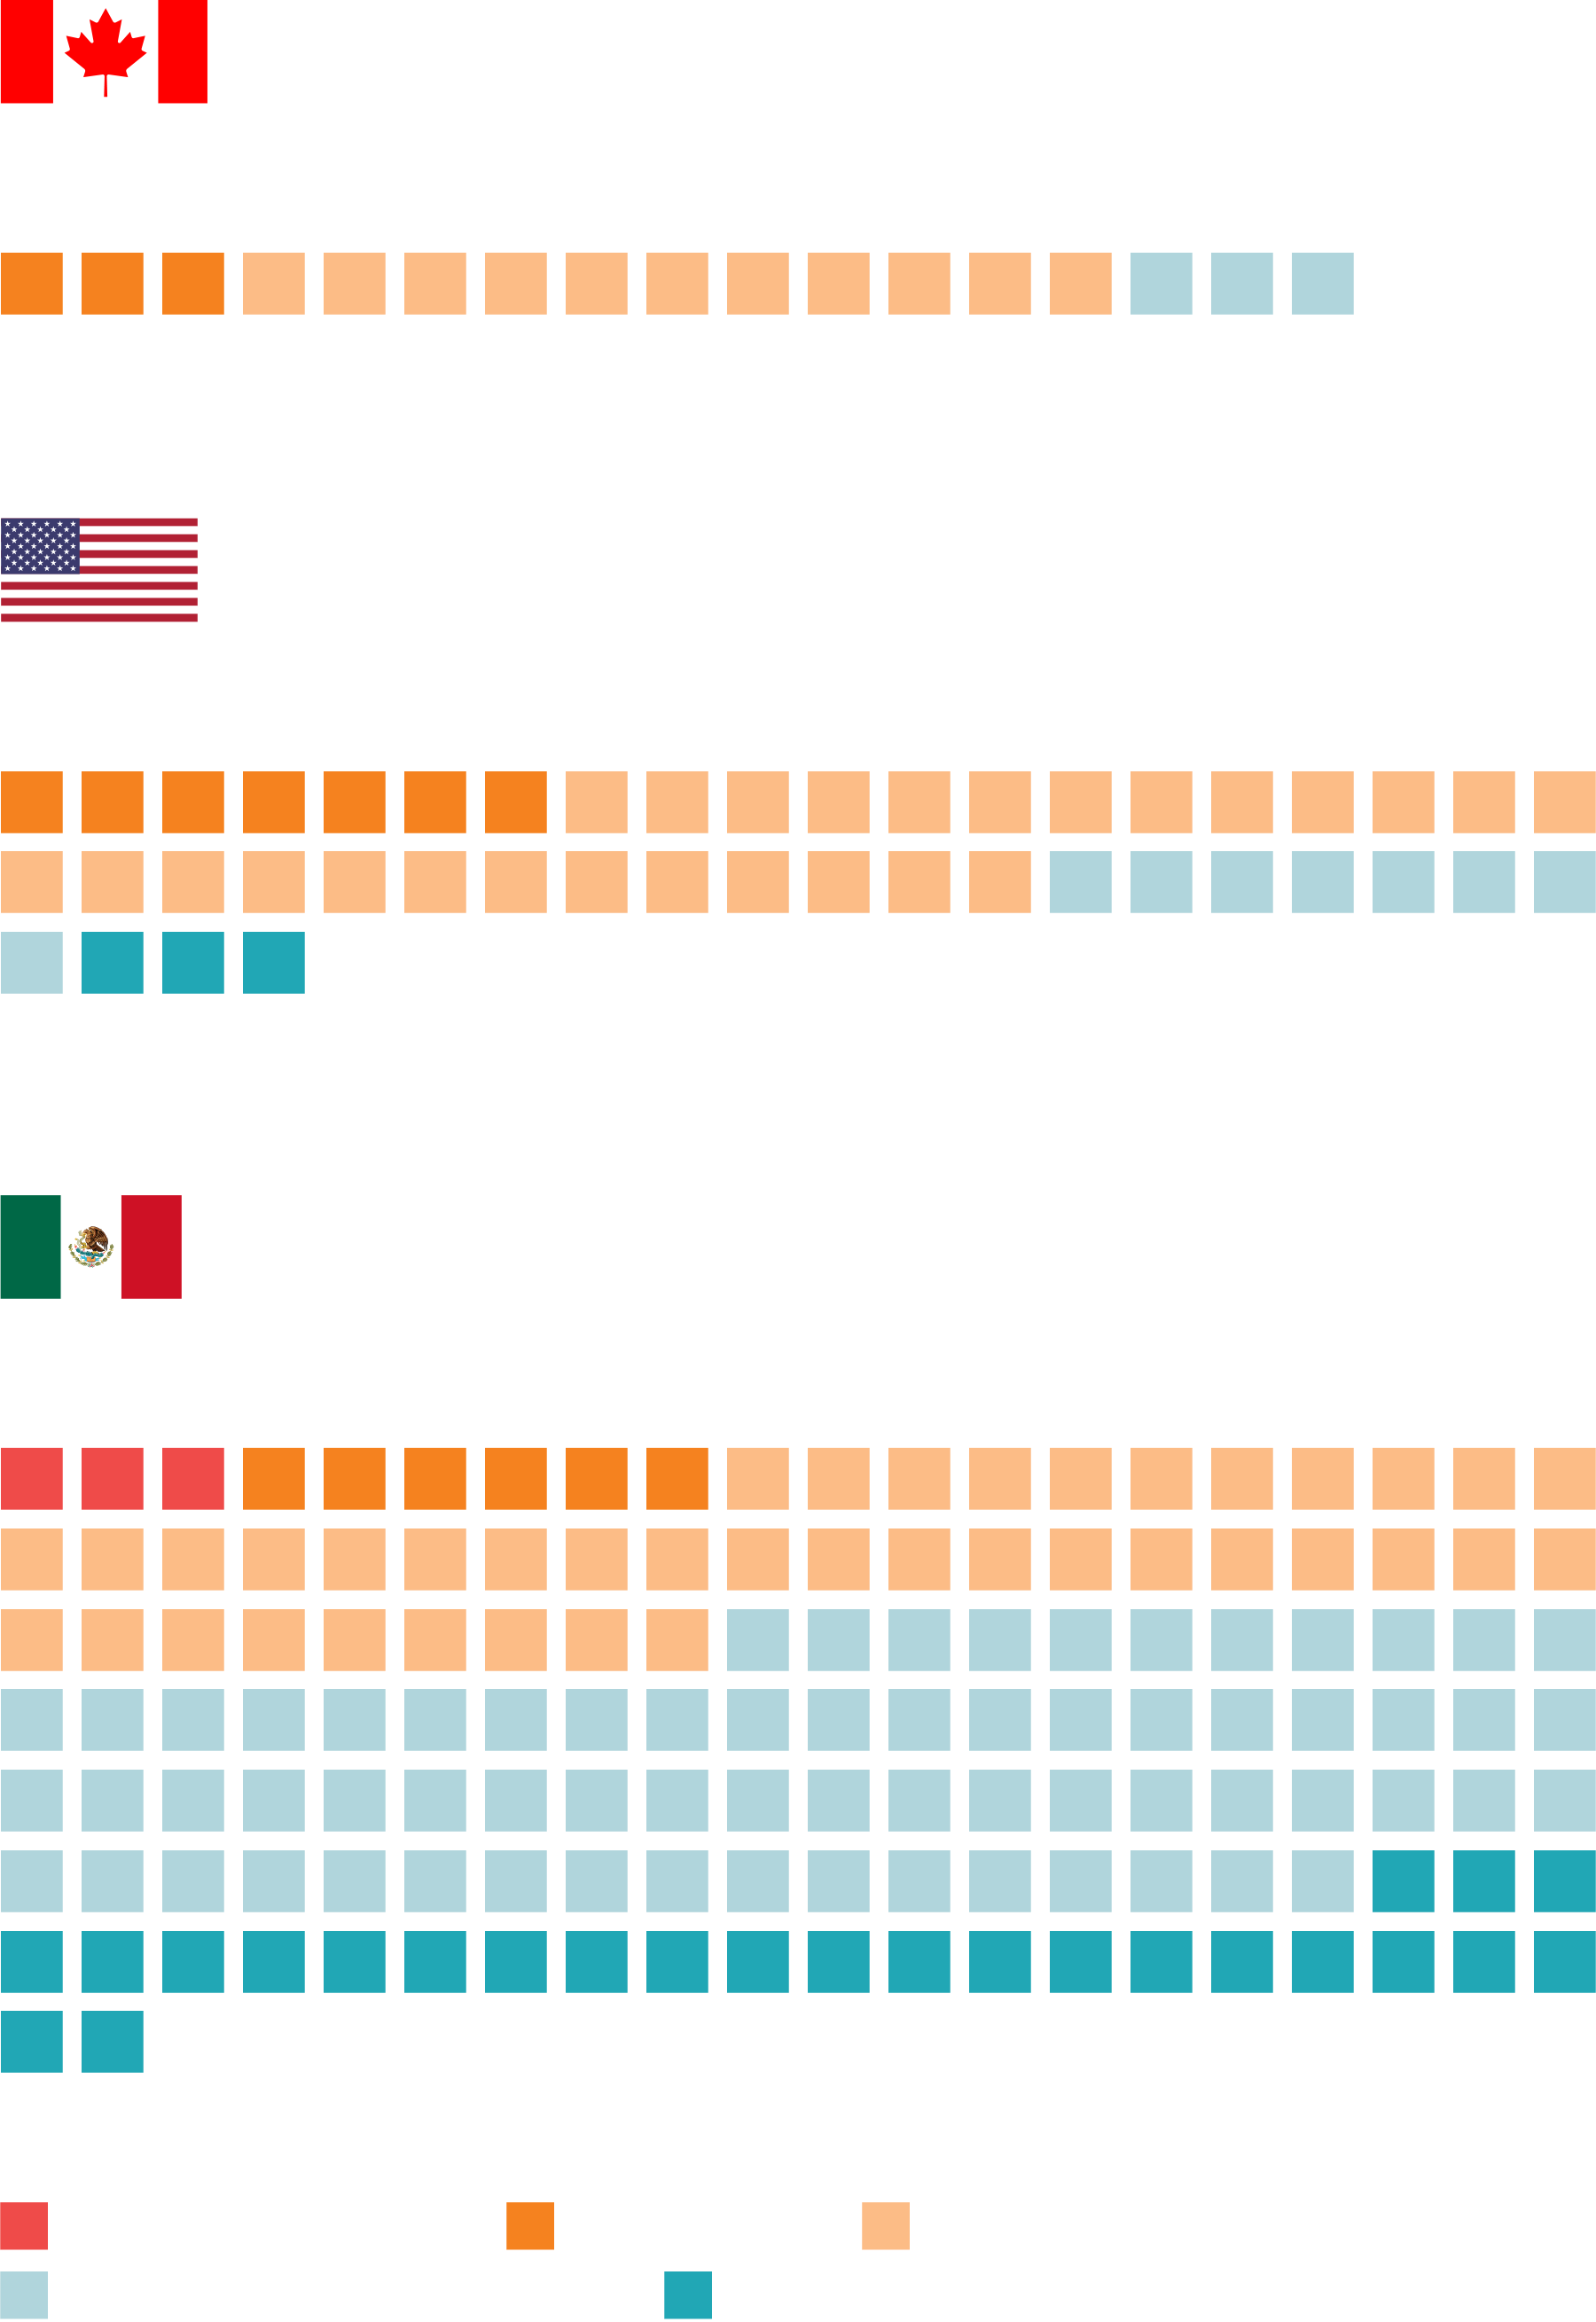 "RIESGO DE EXTINCIÓN" table